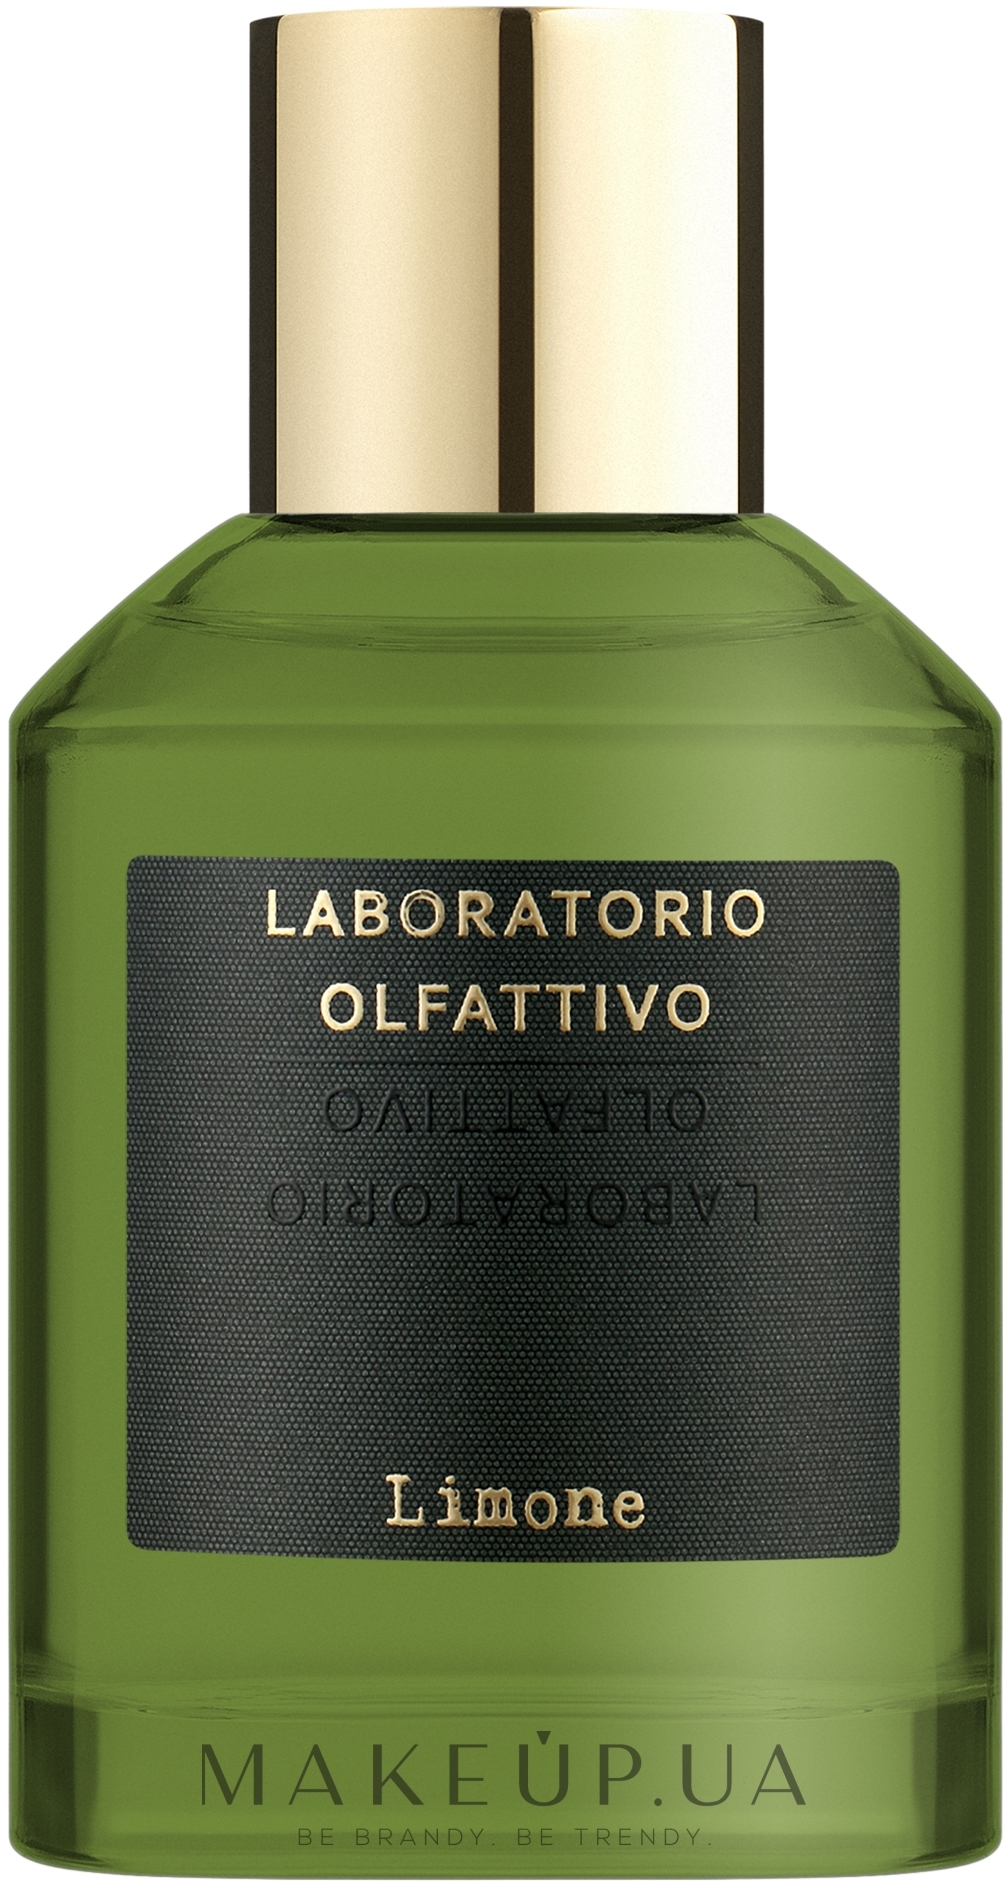 Laboratorio Olfattivo Limone - Парфюмированная вода: купить по